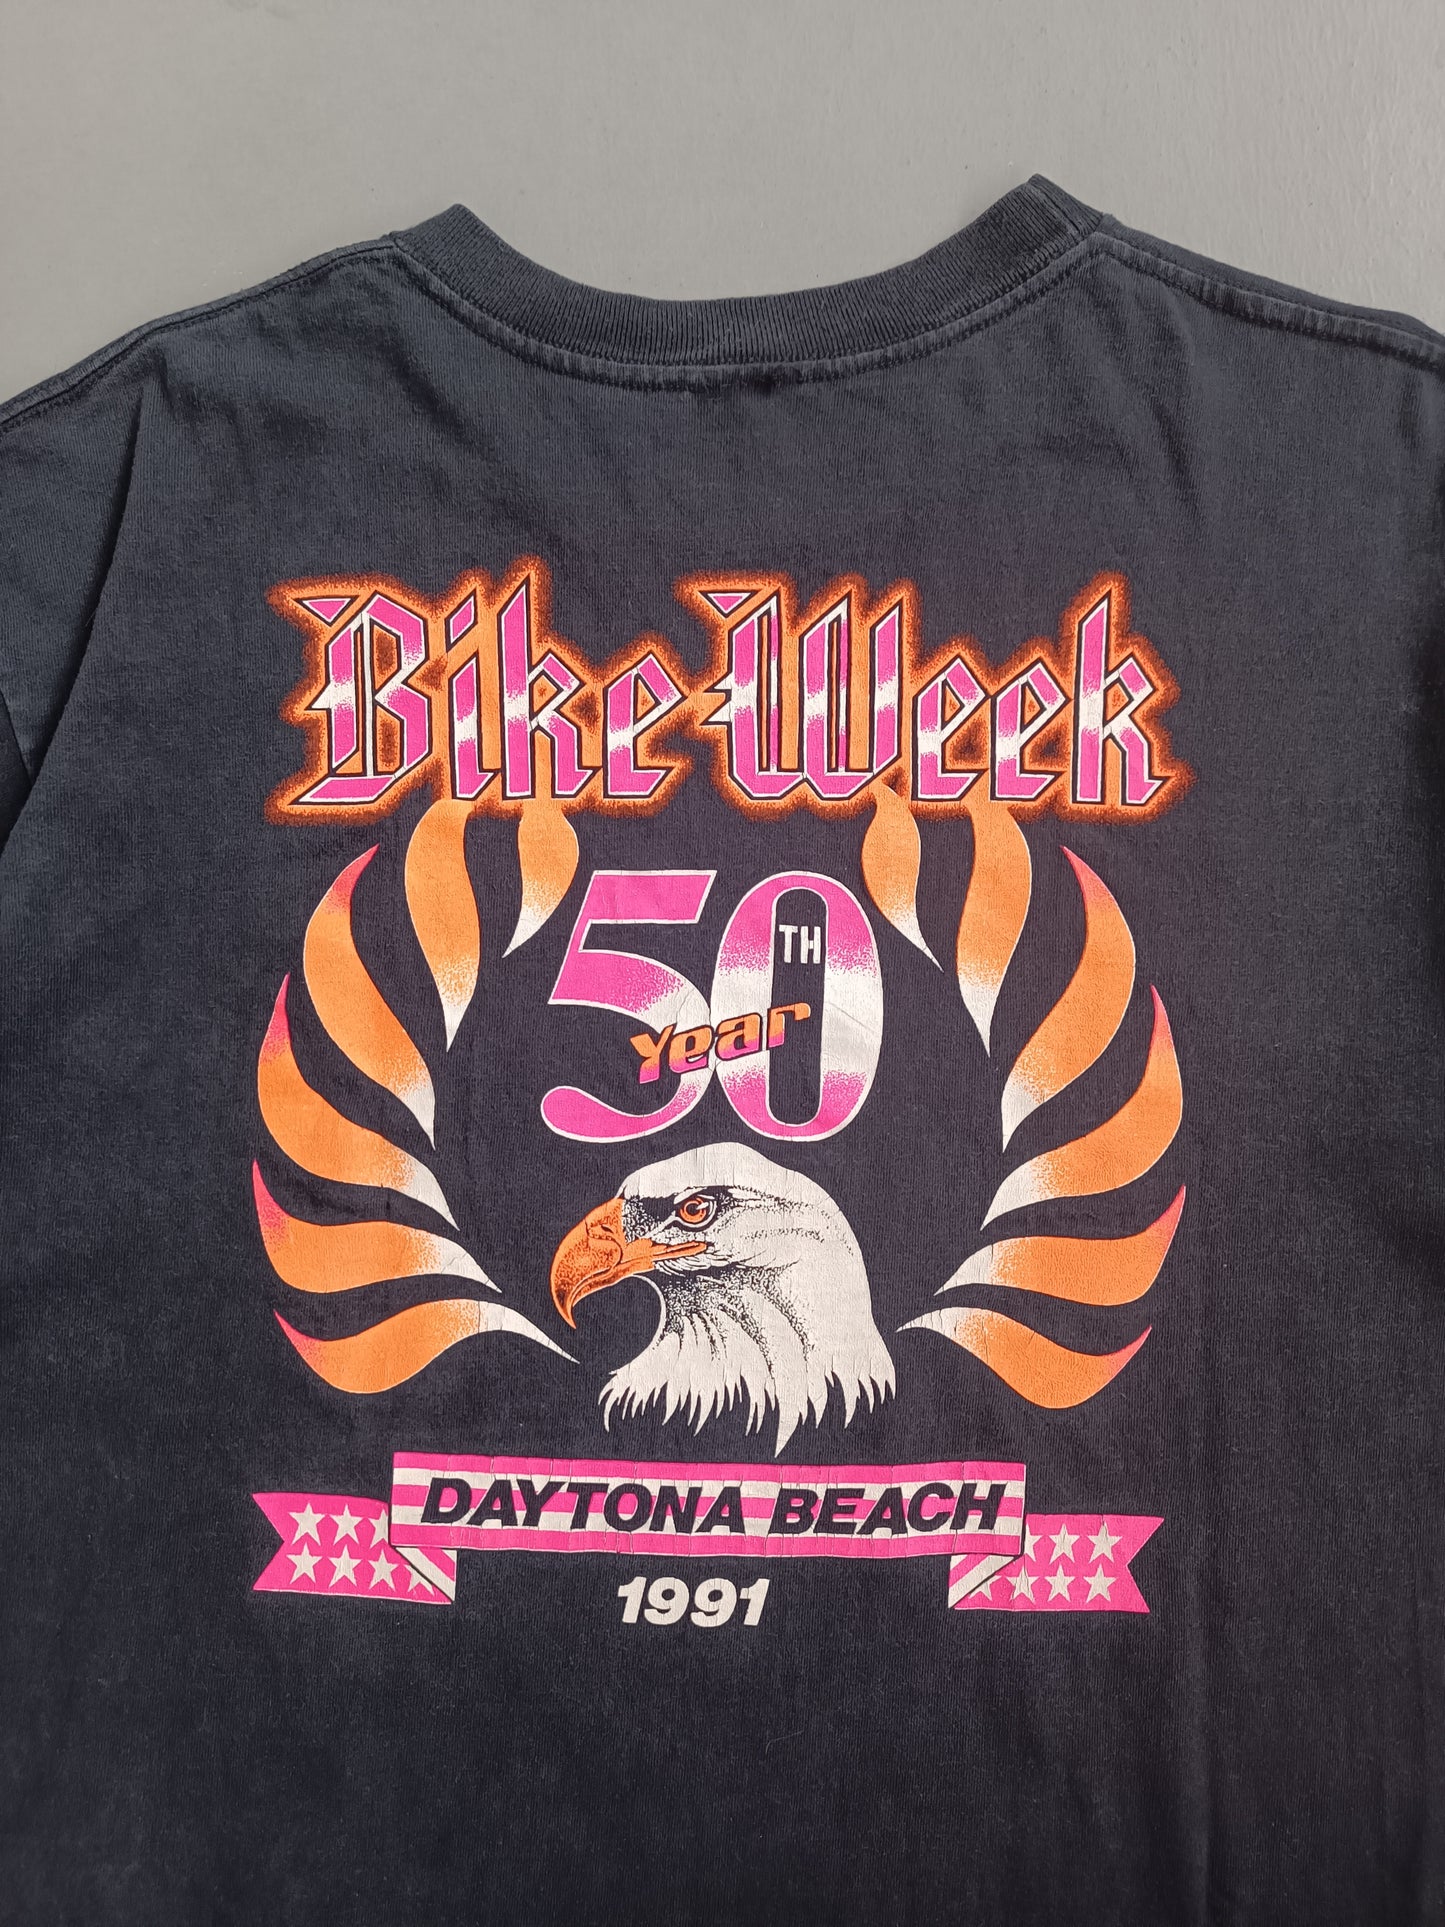 1990s Harley Bike Week - L